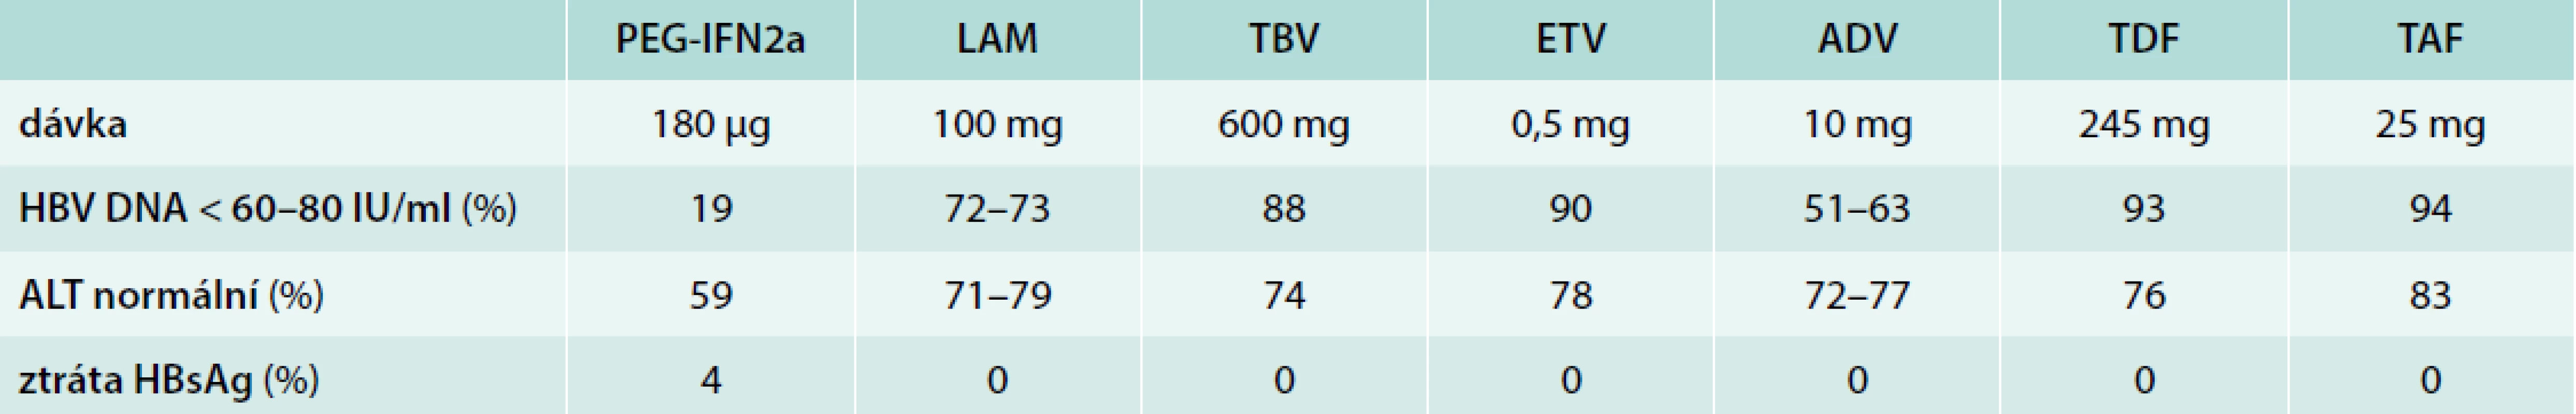 Výsledky léčby HBeAg negativních pacientů (u PEG-IFN 6 měsíců po 48 týdnech léčby, u NA po 48 nebo
52 týdnech dosud probíhající léčby). Upraveno podle [1]